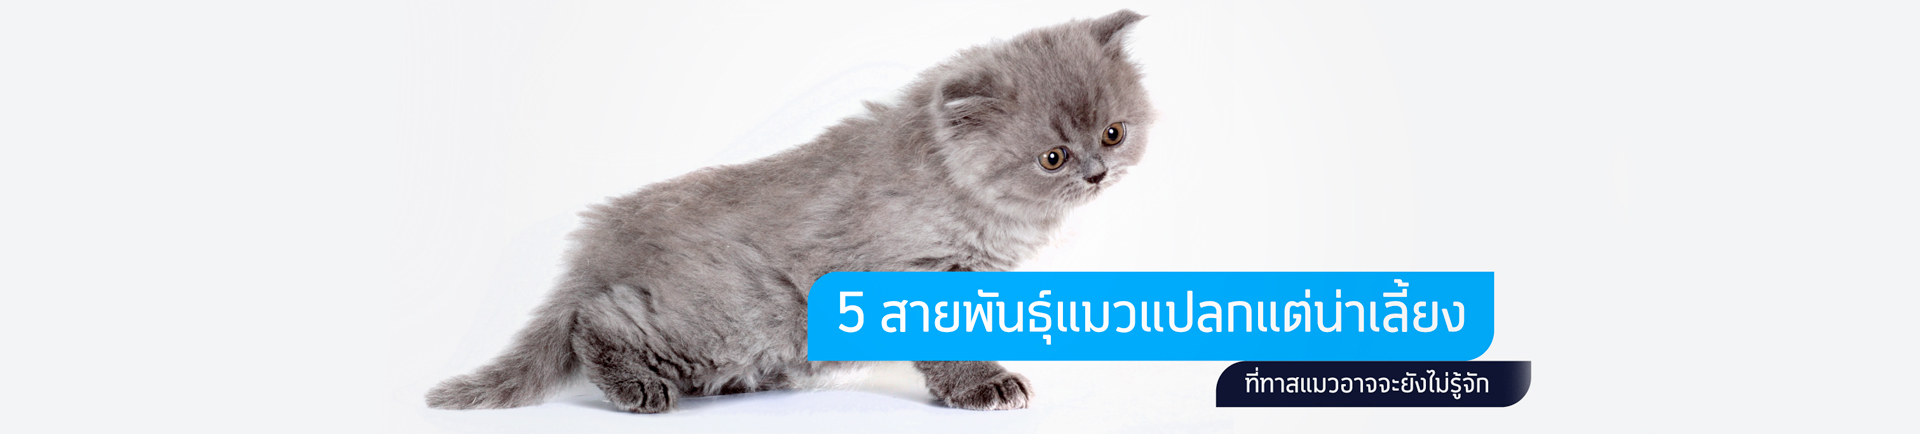 5 สายพันธุ์แมวแปลกแต่น่าเลี้ยงที่ทาสแมวอาจจะยังไม่รู้จัก